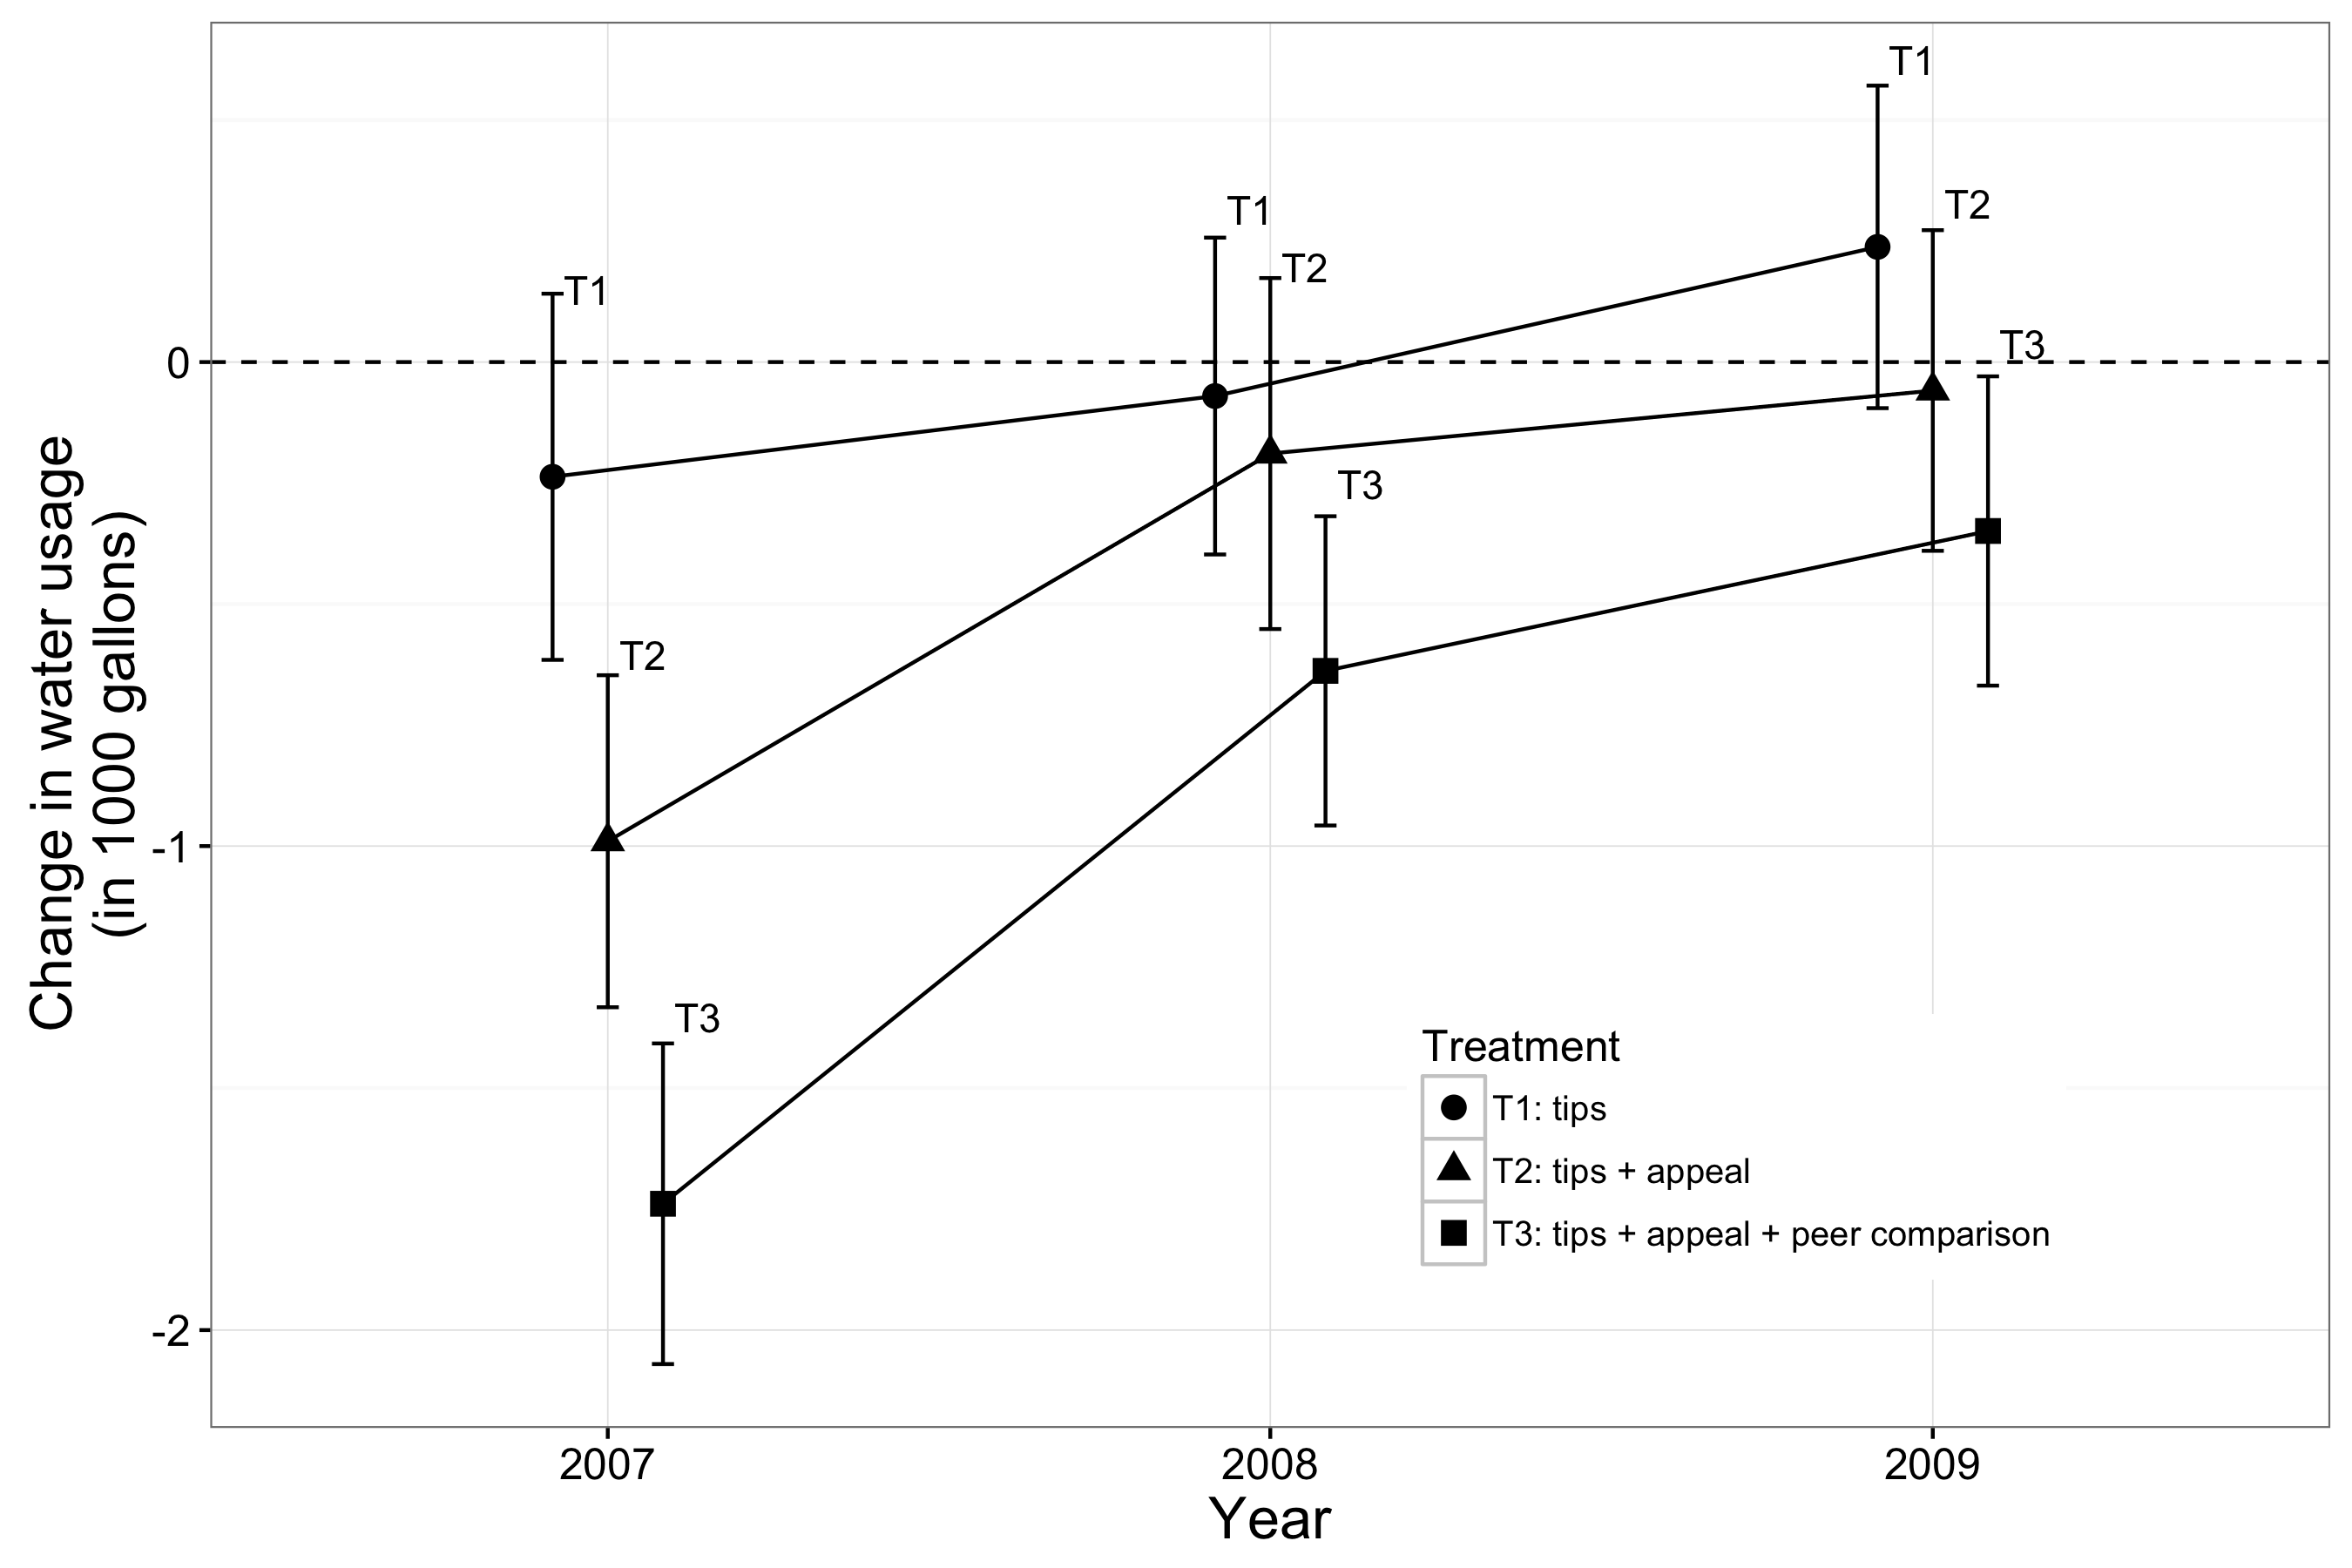 आकृती 4.10: Ferraro, मिरांडा, आणि किंमत (2011) परिणाम. उपचार 21 मे, 2007 पाठविले होते, आणि प्रभाव मोजली होते 2007, 2008, आणि 2009 च्या उन्हाळ्यात उपचार संशोधक यंत्रणा एक चांगले अर्थाने विकसित राबविली unbundling करून. टिपा फक्त उपचार मूलत: नाही लांब (तीन वर्षे) टर्म मध्यम (दोन वर्षे) लहान (एक वर्ष) प्रभाव, आणि होता. टिपा + अपील उपचार पाणी वापर कमी करण्यासाठी सहभागी झाल्याने, पण फक्त अल्पकालीन. सल्ला + अपील + सरदार माहिती उपचार सहभागी लहान, मध्यम पाणी वापर, आणि दीर्घकालीन कमी झाले. उभ्या बार आत्मविश्वास कालांतराने अंदाज आहेत. प्रत्यक्ष अभ्यास साहित्य Bernedo, Ferraro, आणि किंमत (2014) पहा.